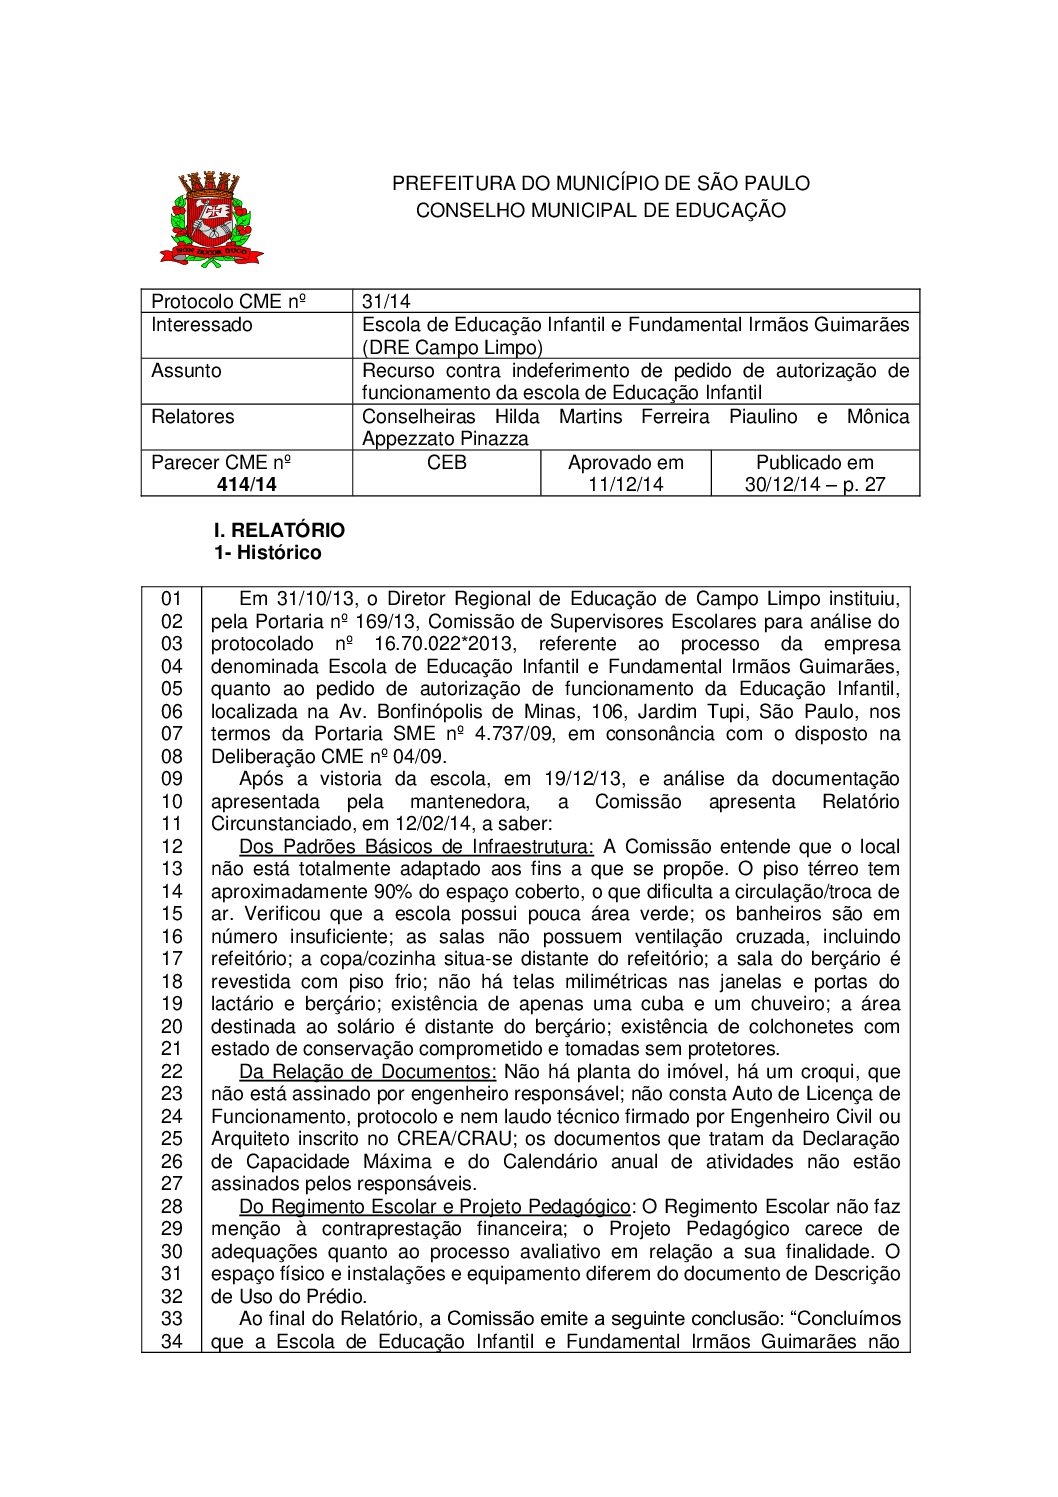 Parecer CME nº 414/2014 - Escola de Educação Infantil e Fundamental Irmãos Guimarães (DRE Campo Limpo) - Recurso contra indeferimento de pedido de autorização de funcionamento da escola de Educação Infantil 